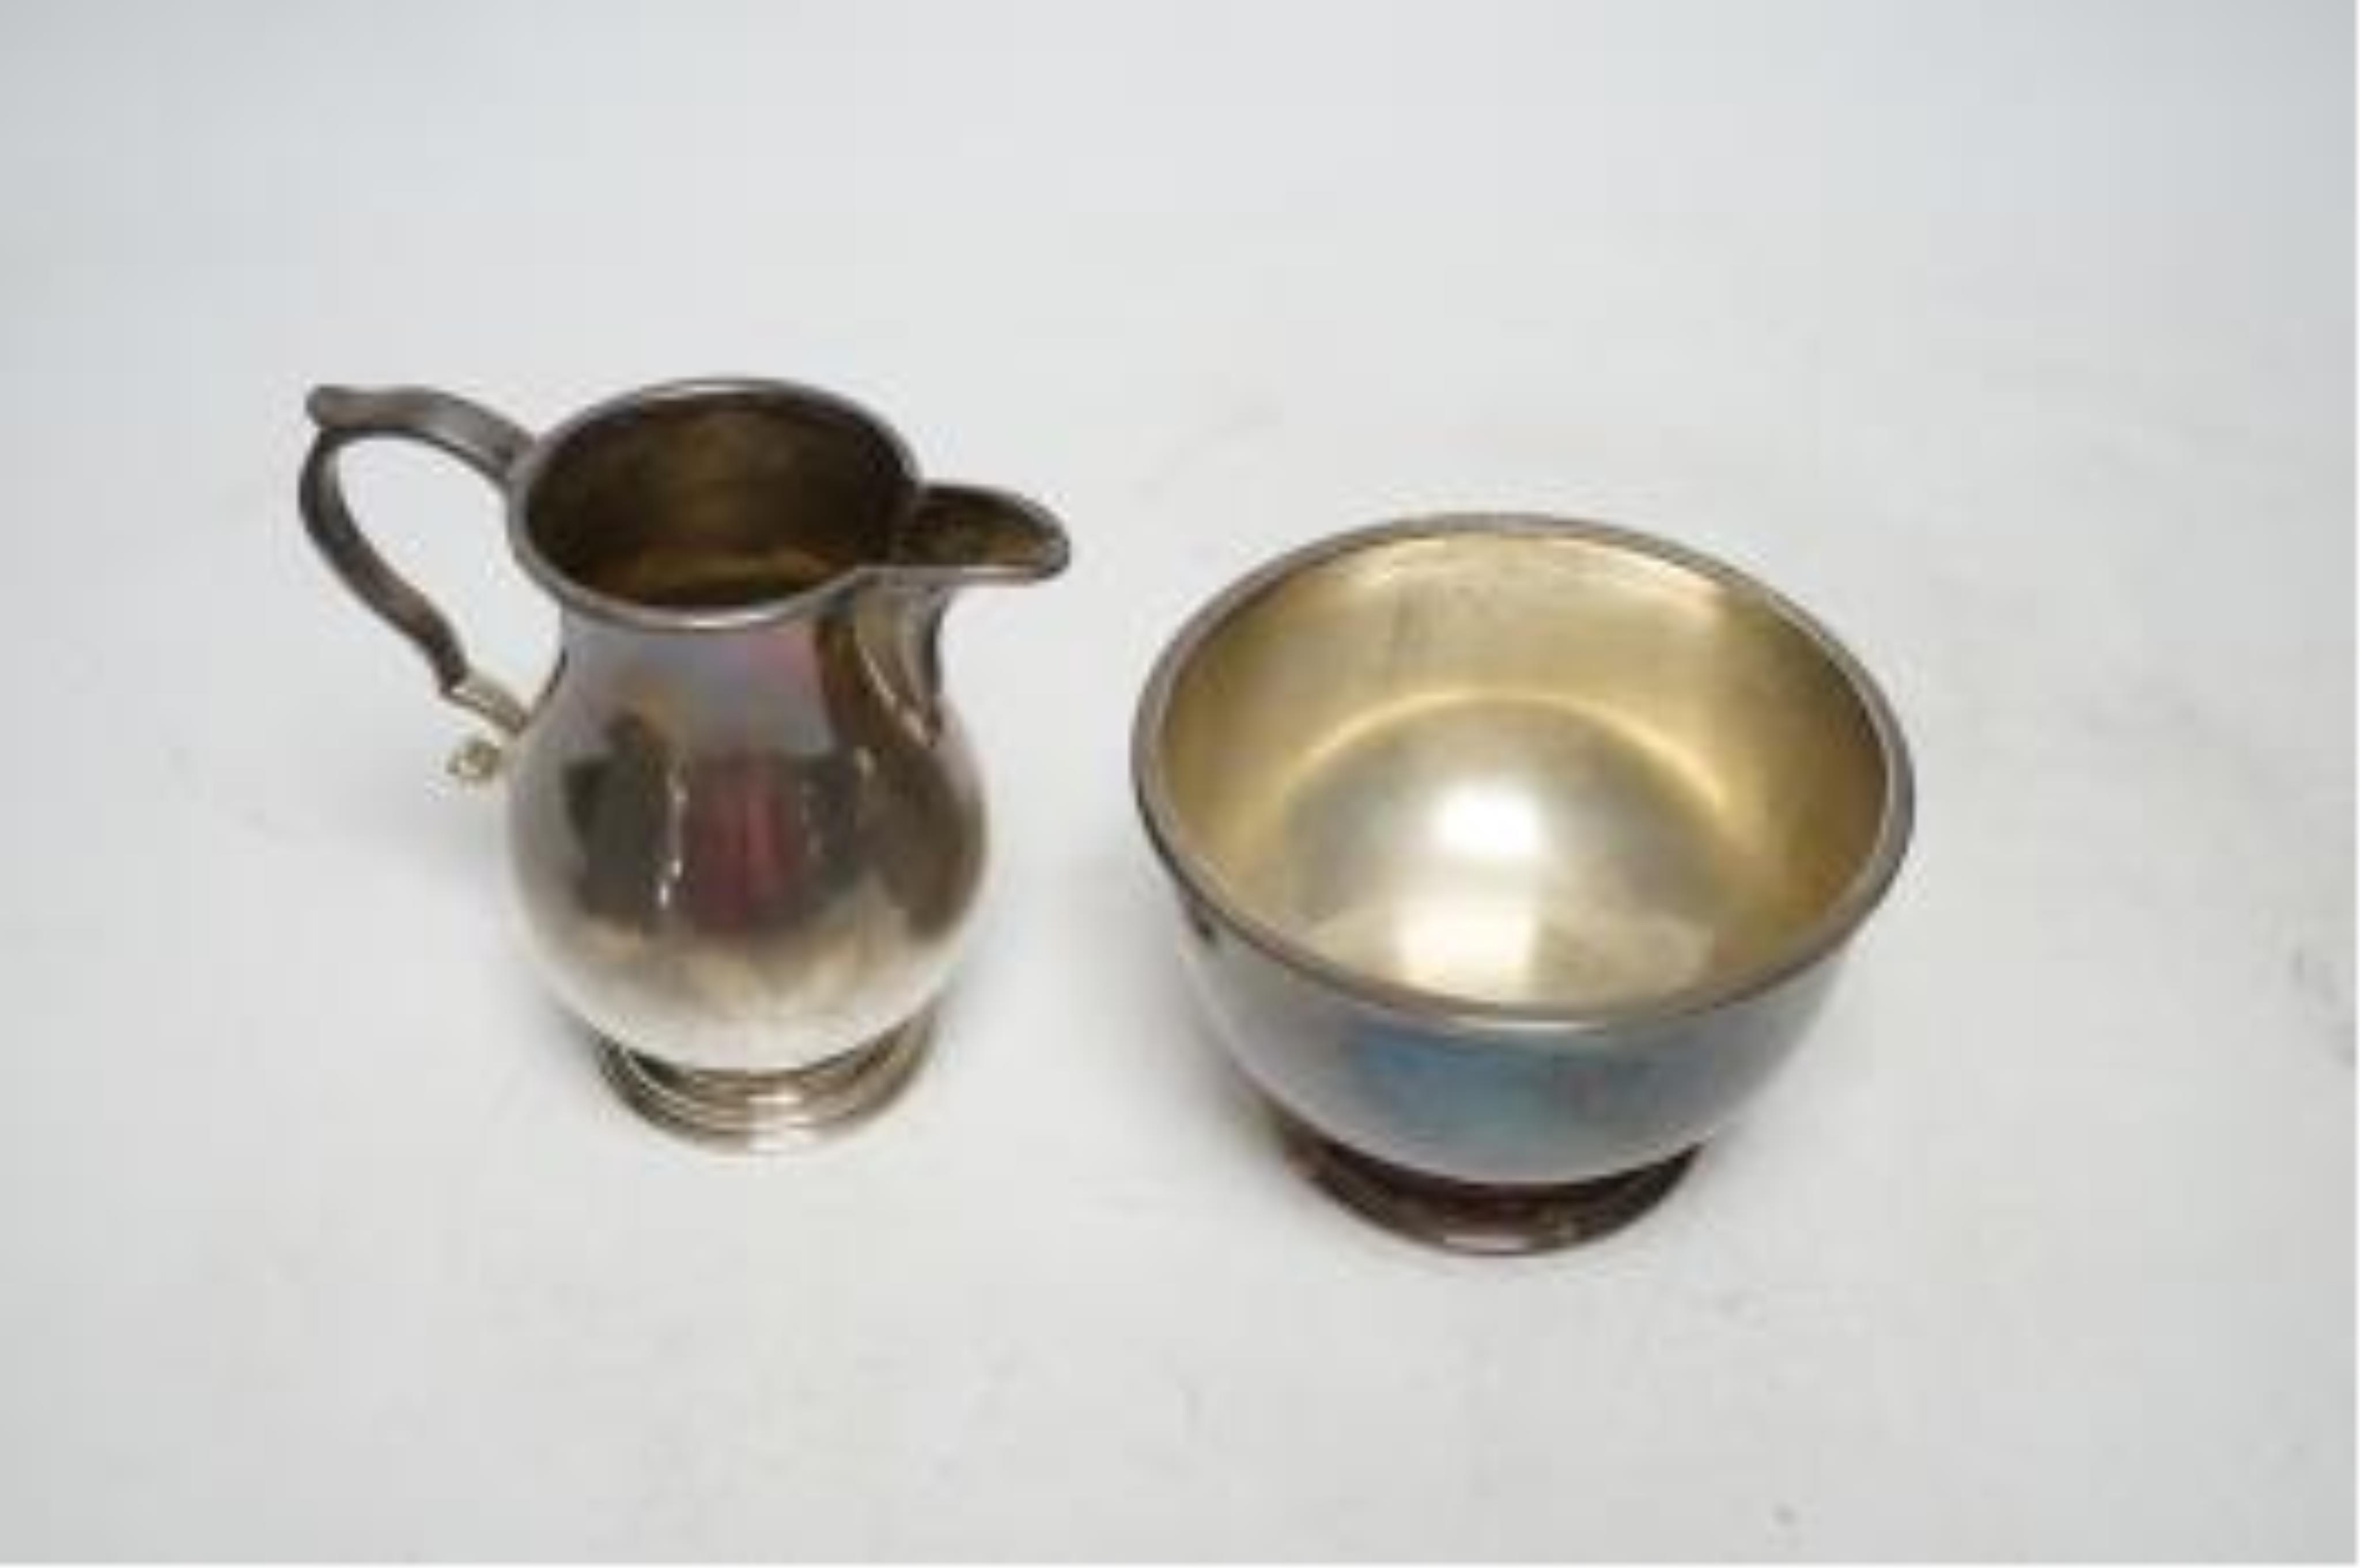 An Elizabeth II silver cream jug and sugar bowl, by William Comyns & Sons Ltd, London, 1962/3, bowl diameter 87mm, 8.5oz. Good condition.